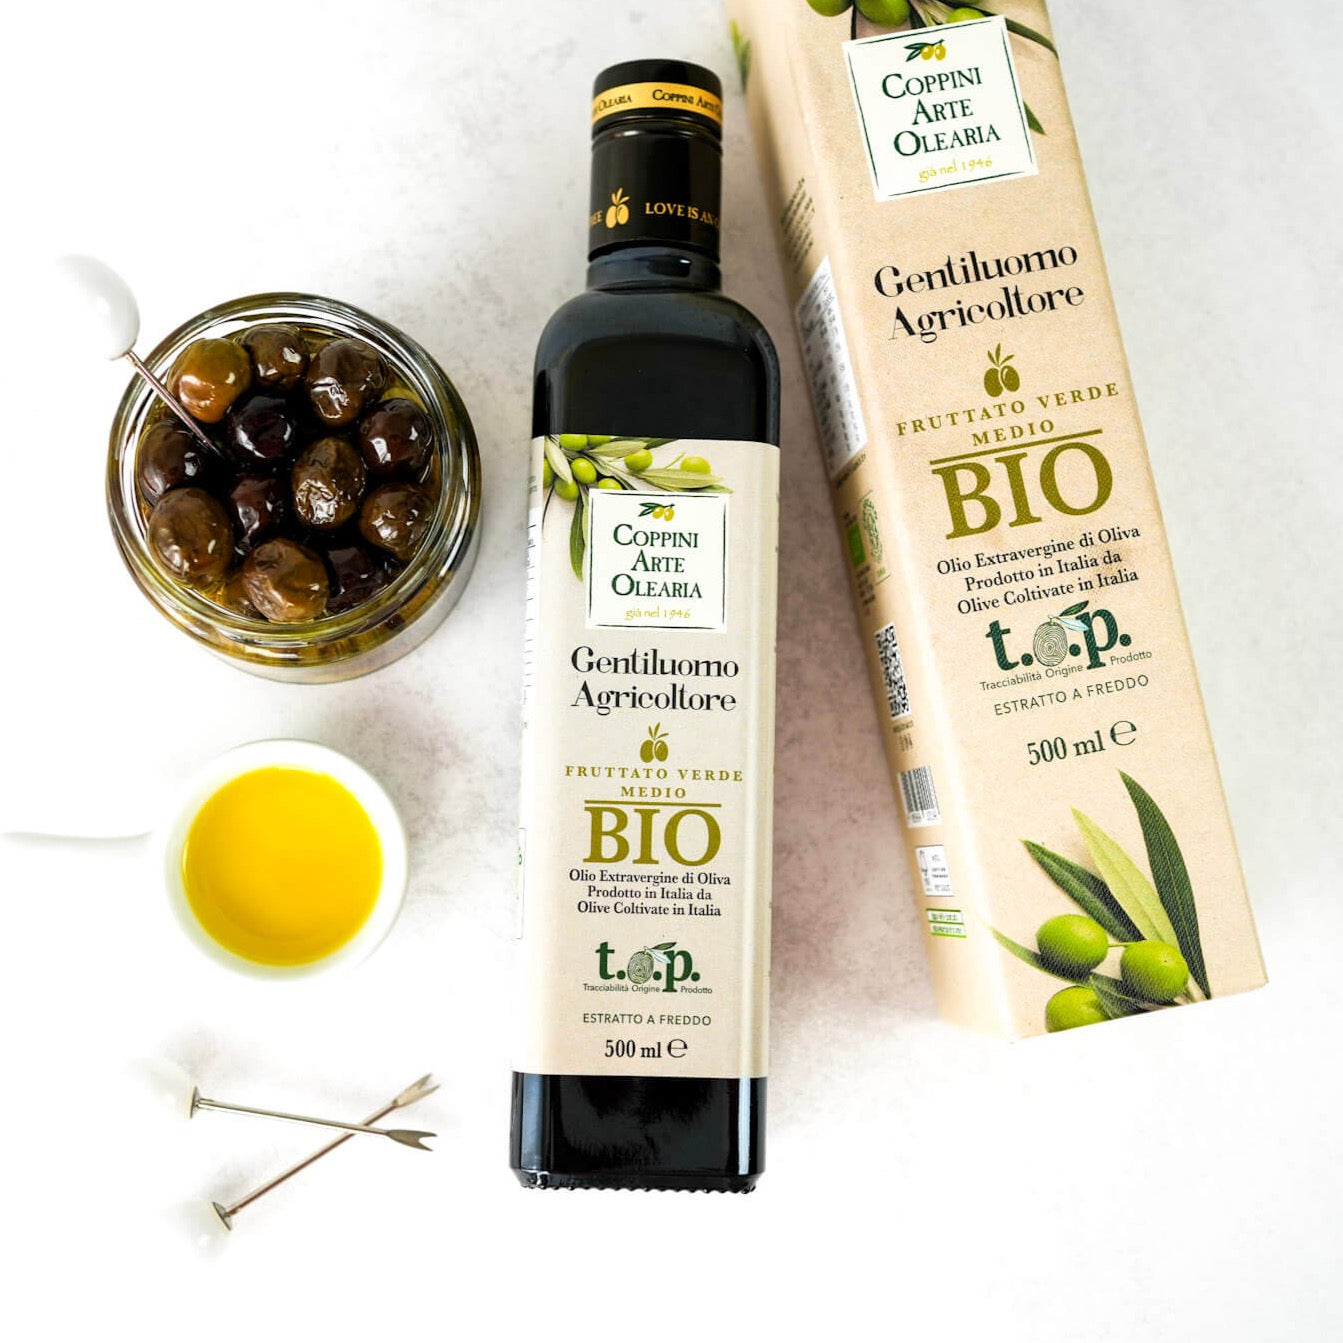 Beim Olivenöl Test schneidet das milde Olivenöl extra vergine in Bio Qualität sehr gut ab. Es ist ein hochqualitatives und natives Olivenöl mit mildem Geschmack.